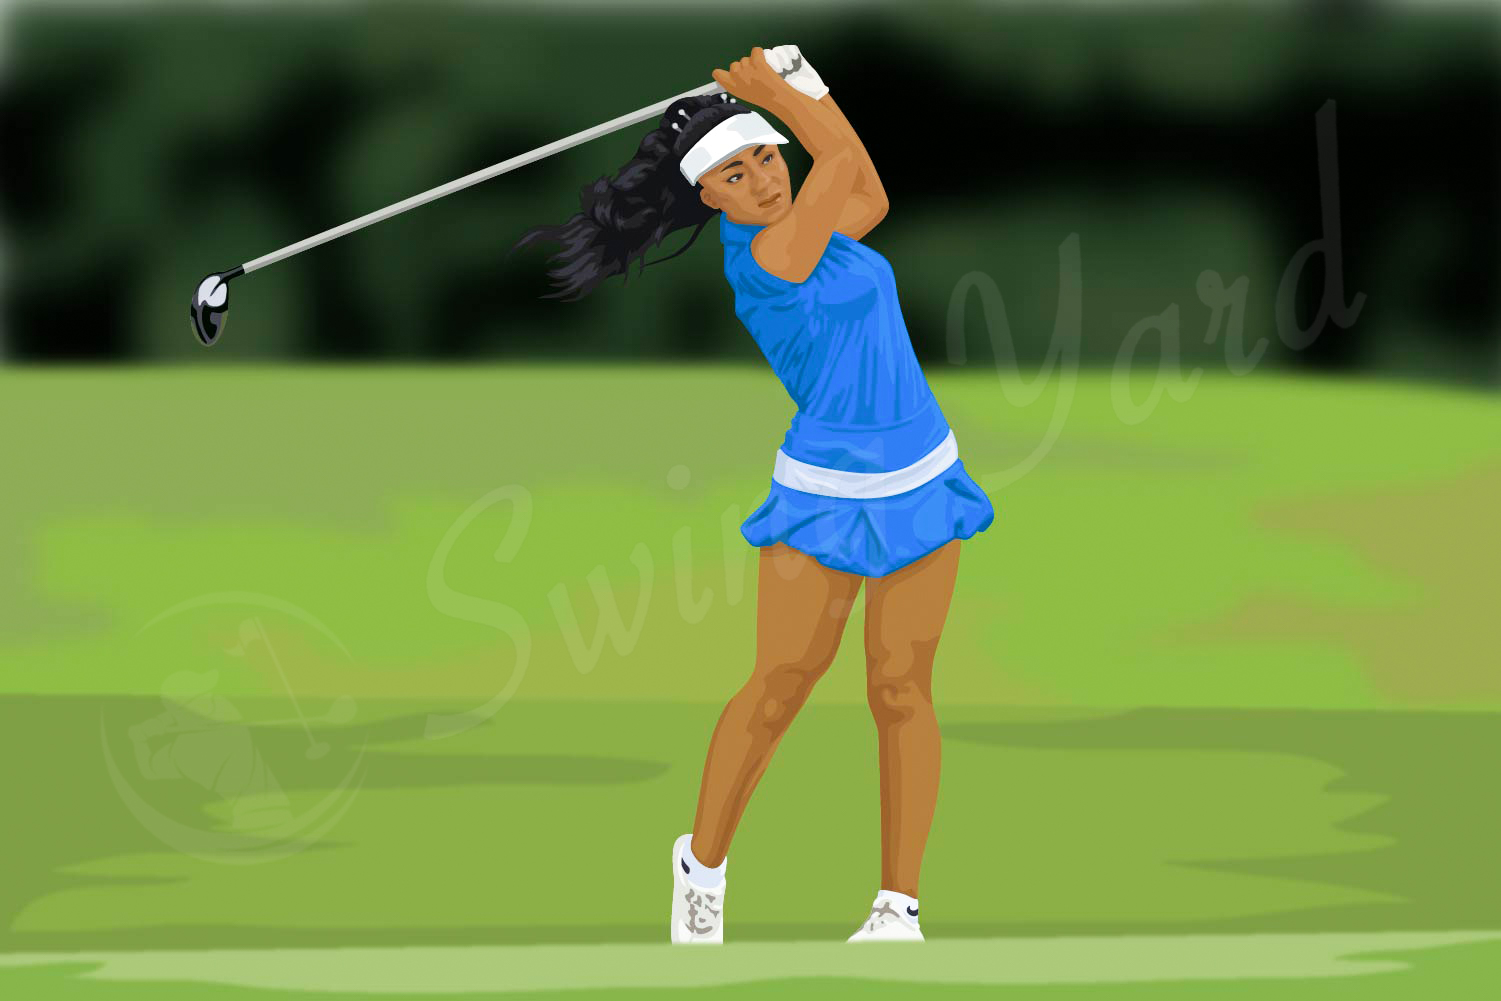 A female golfer swinging a club